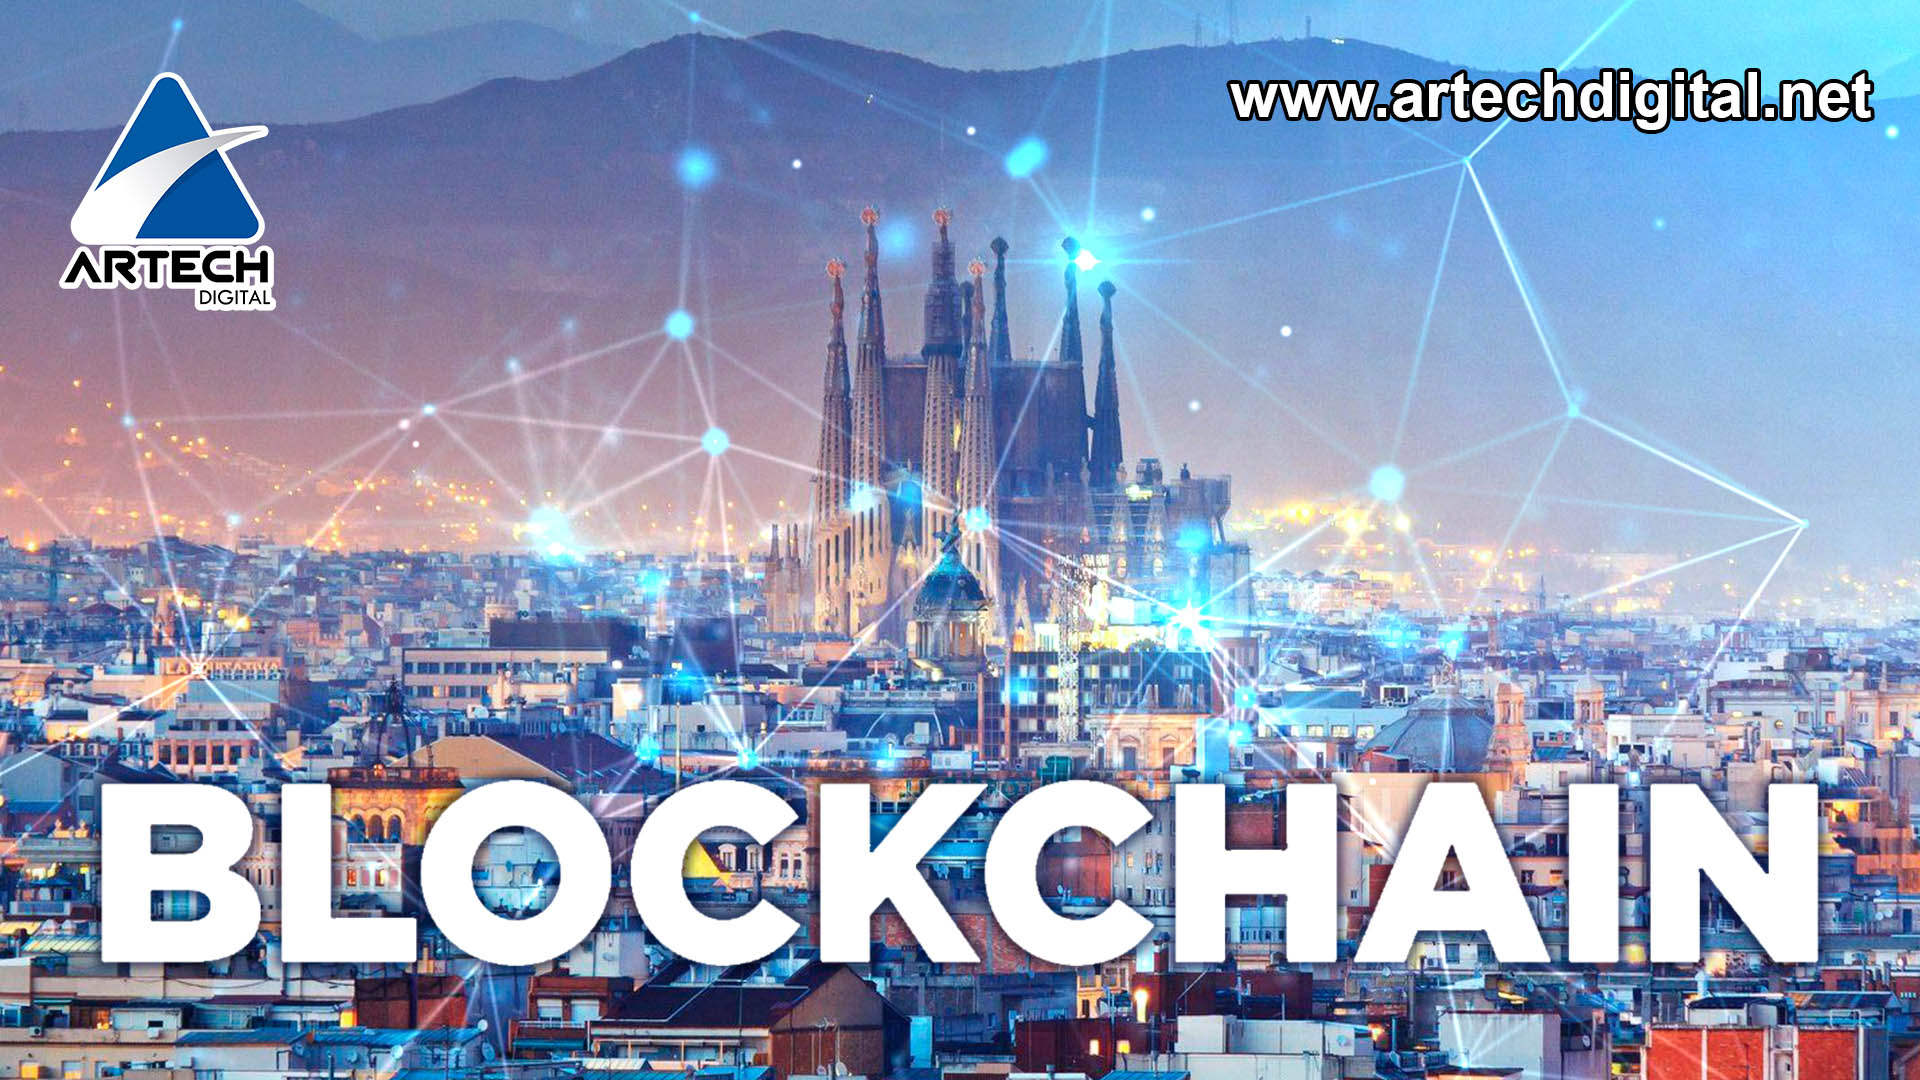 Convenio europeo de Blockchain llegará a Barcelona – España este 29 de noviembre